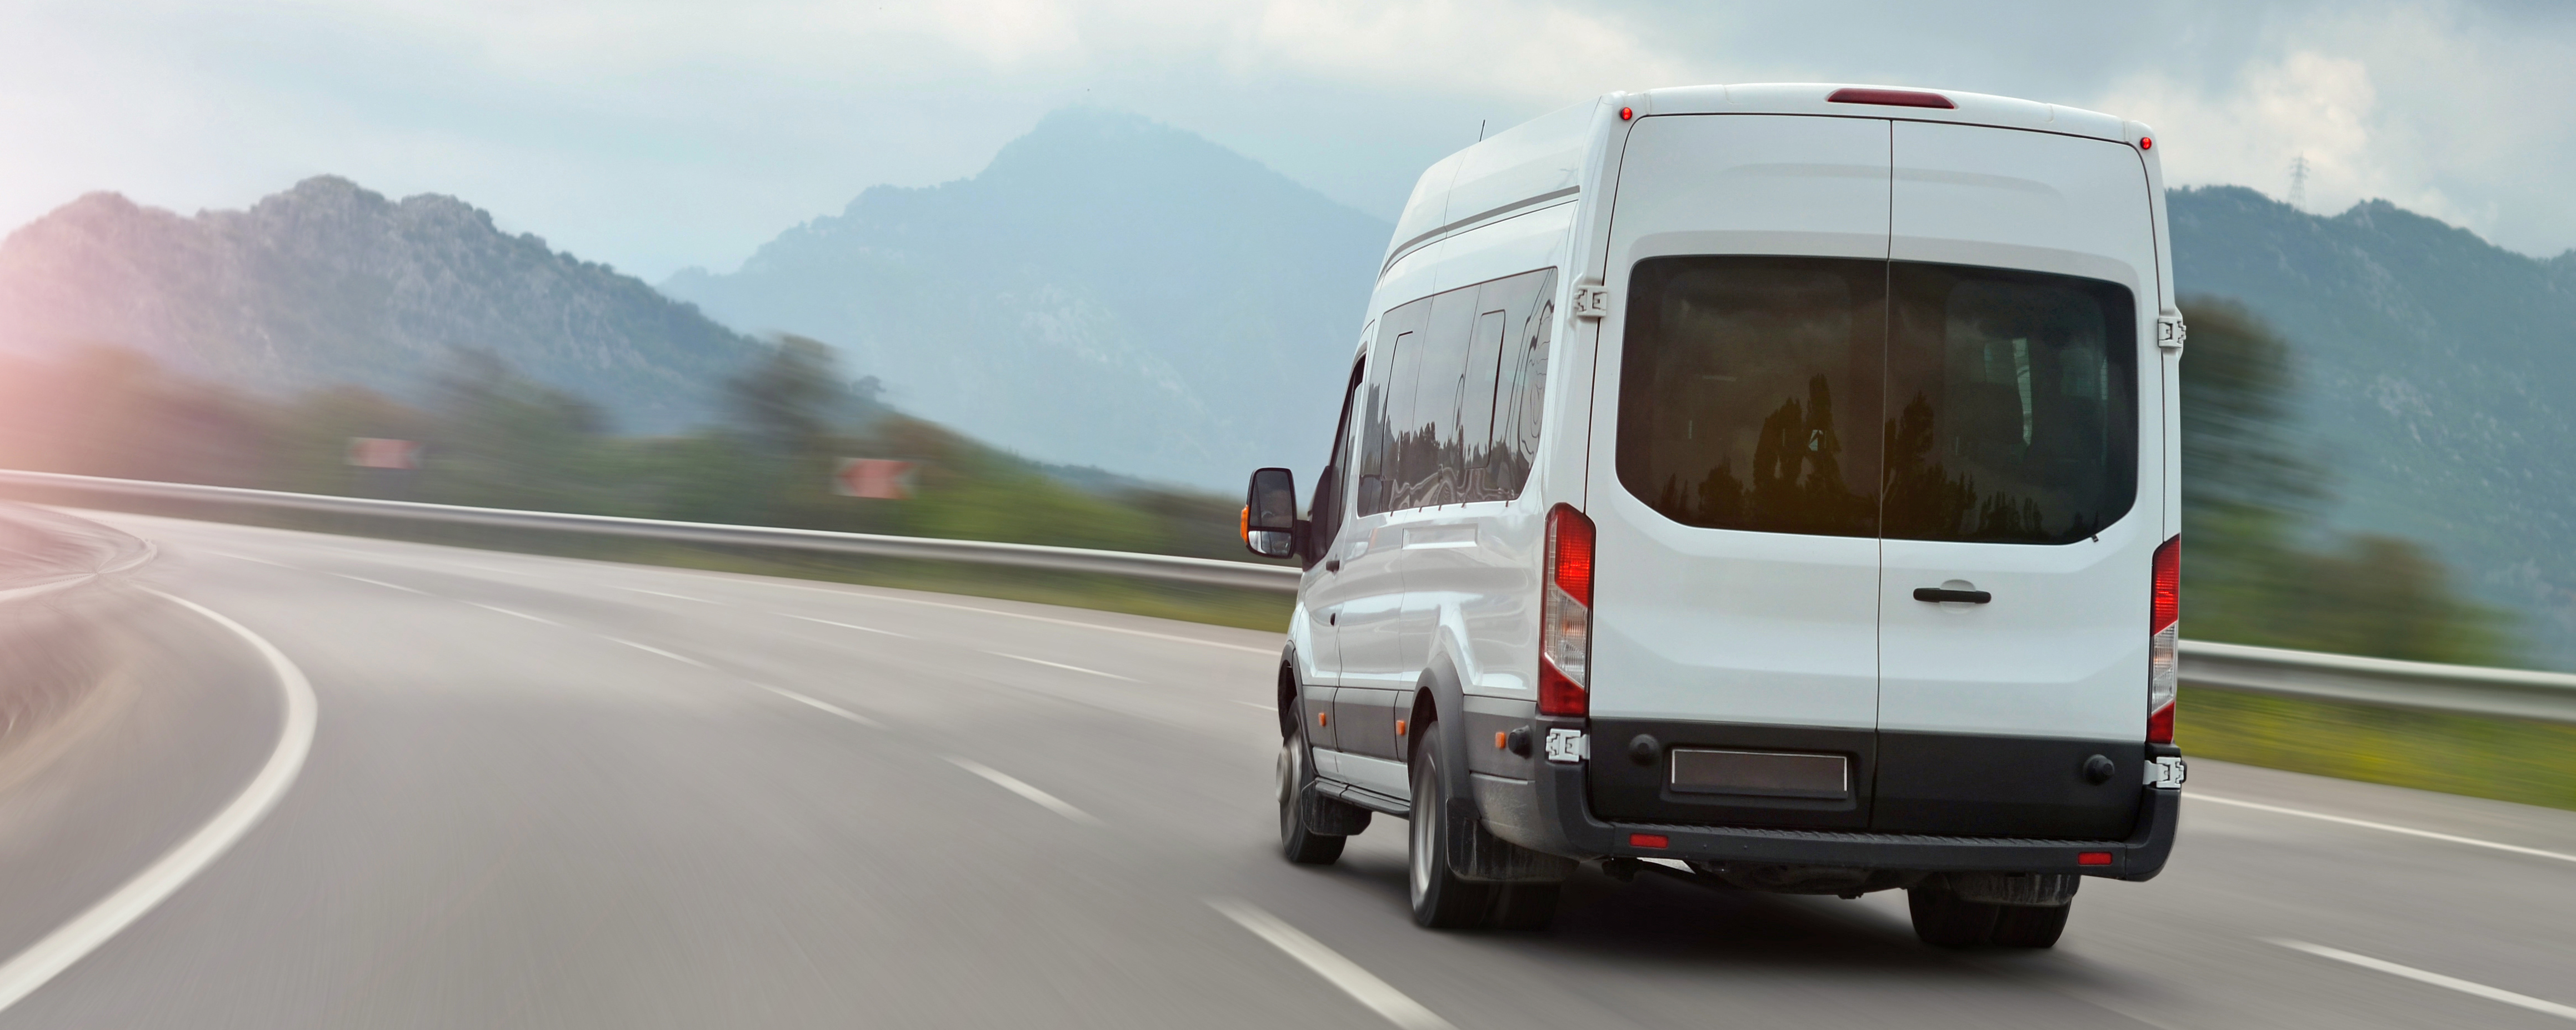 Benefits of Renting a Cargo Van